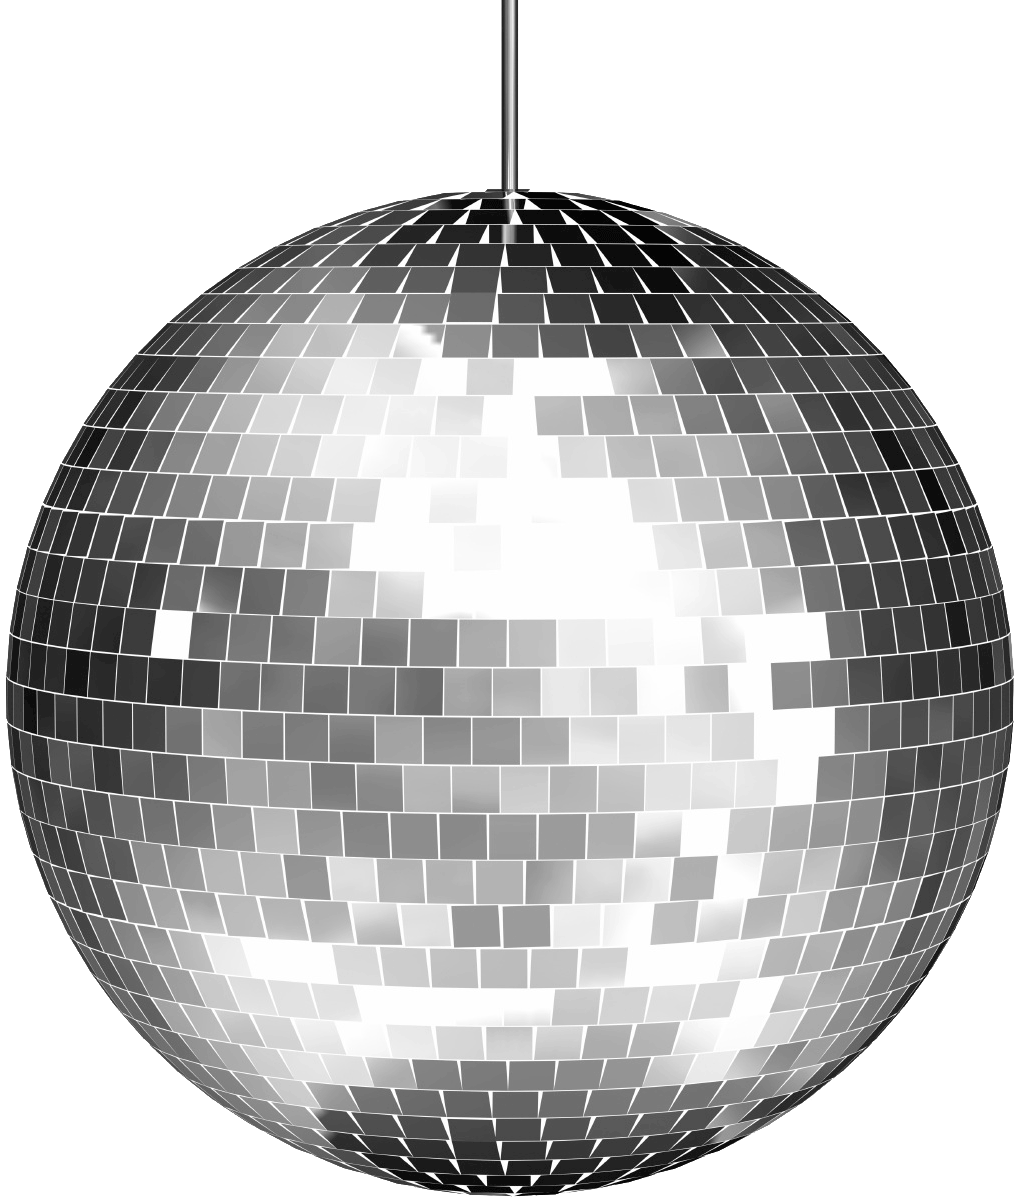 Disco Ball HD wallpapers, Desktop wallpaper - most viewed